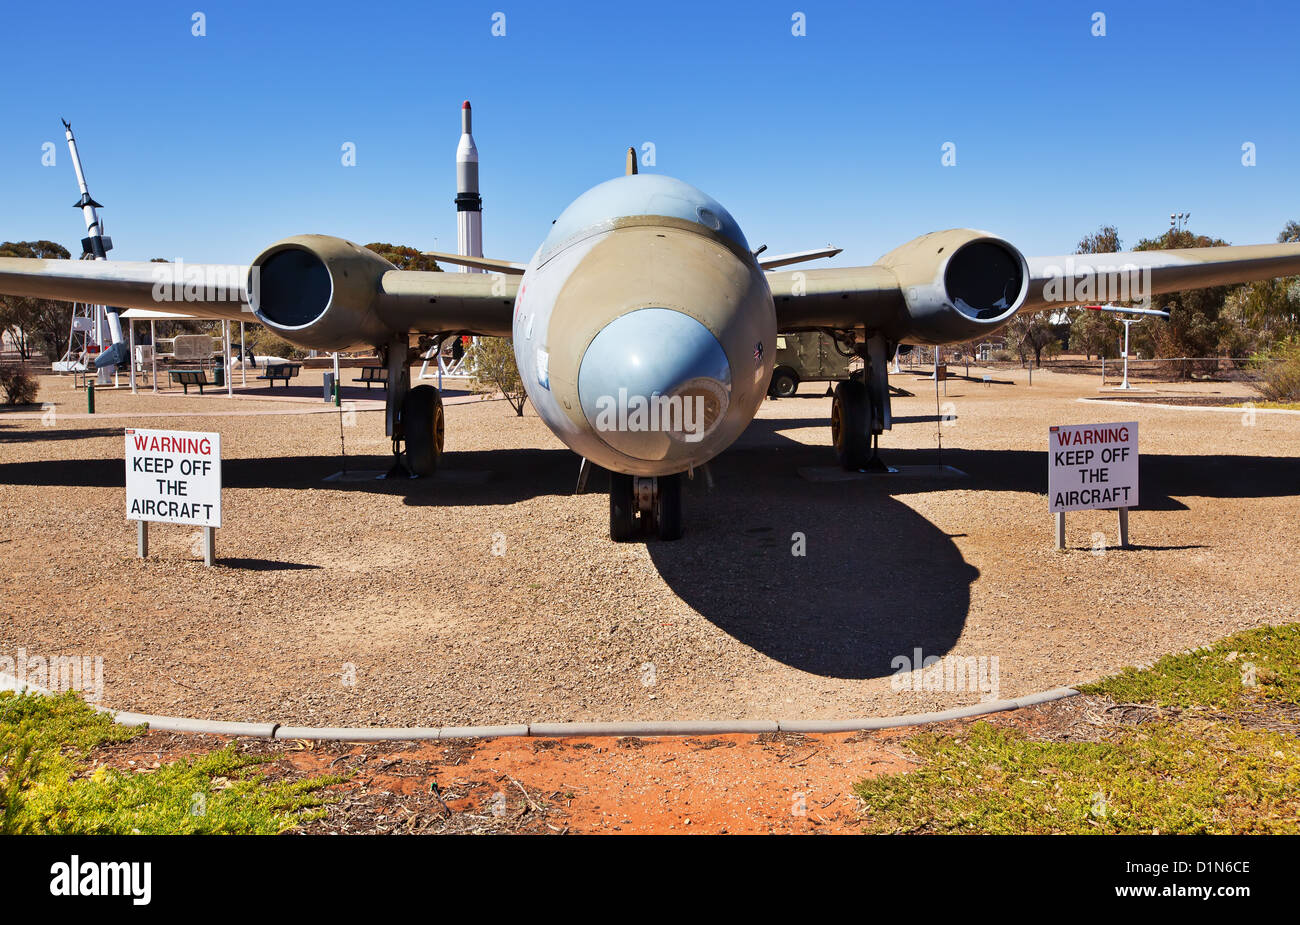 Raketen historischen Schatten Park Geschichte Rakete Heritage Park Woomera South Australia Meteor Düsenjäger Raketenflugzeug anzeigen Stockfoto